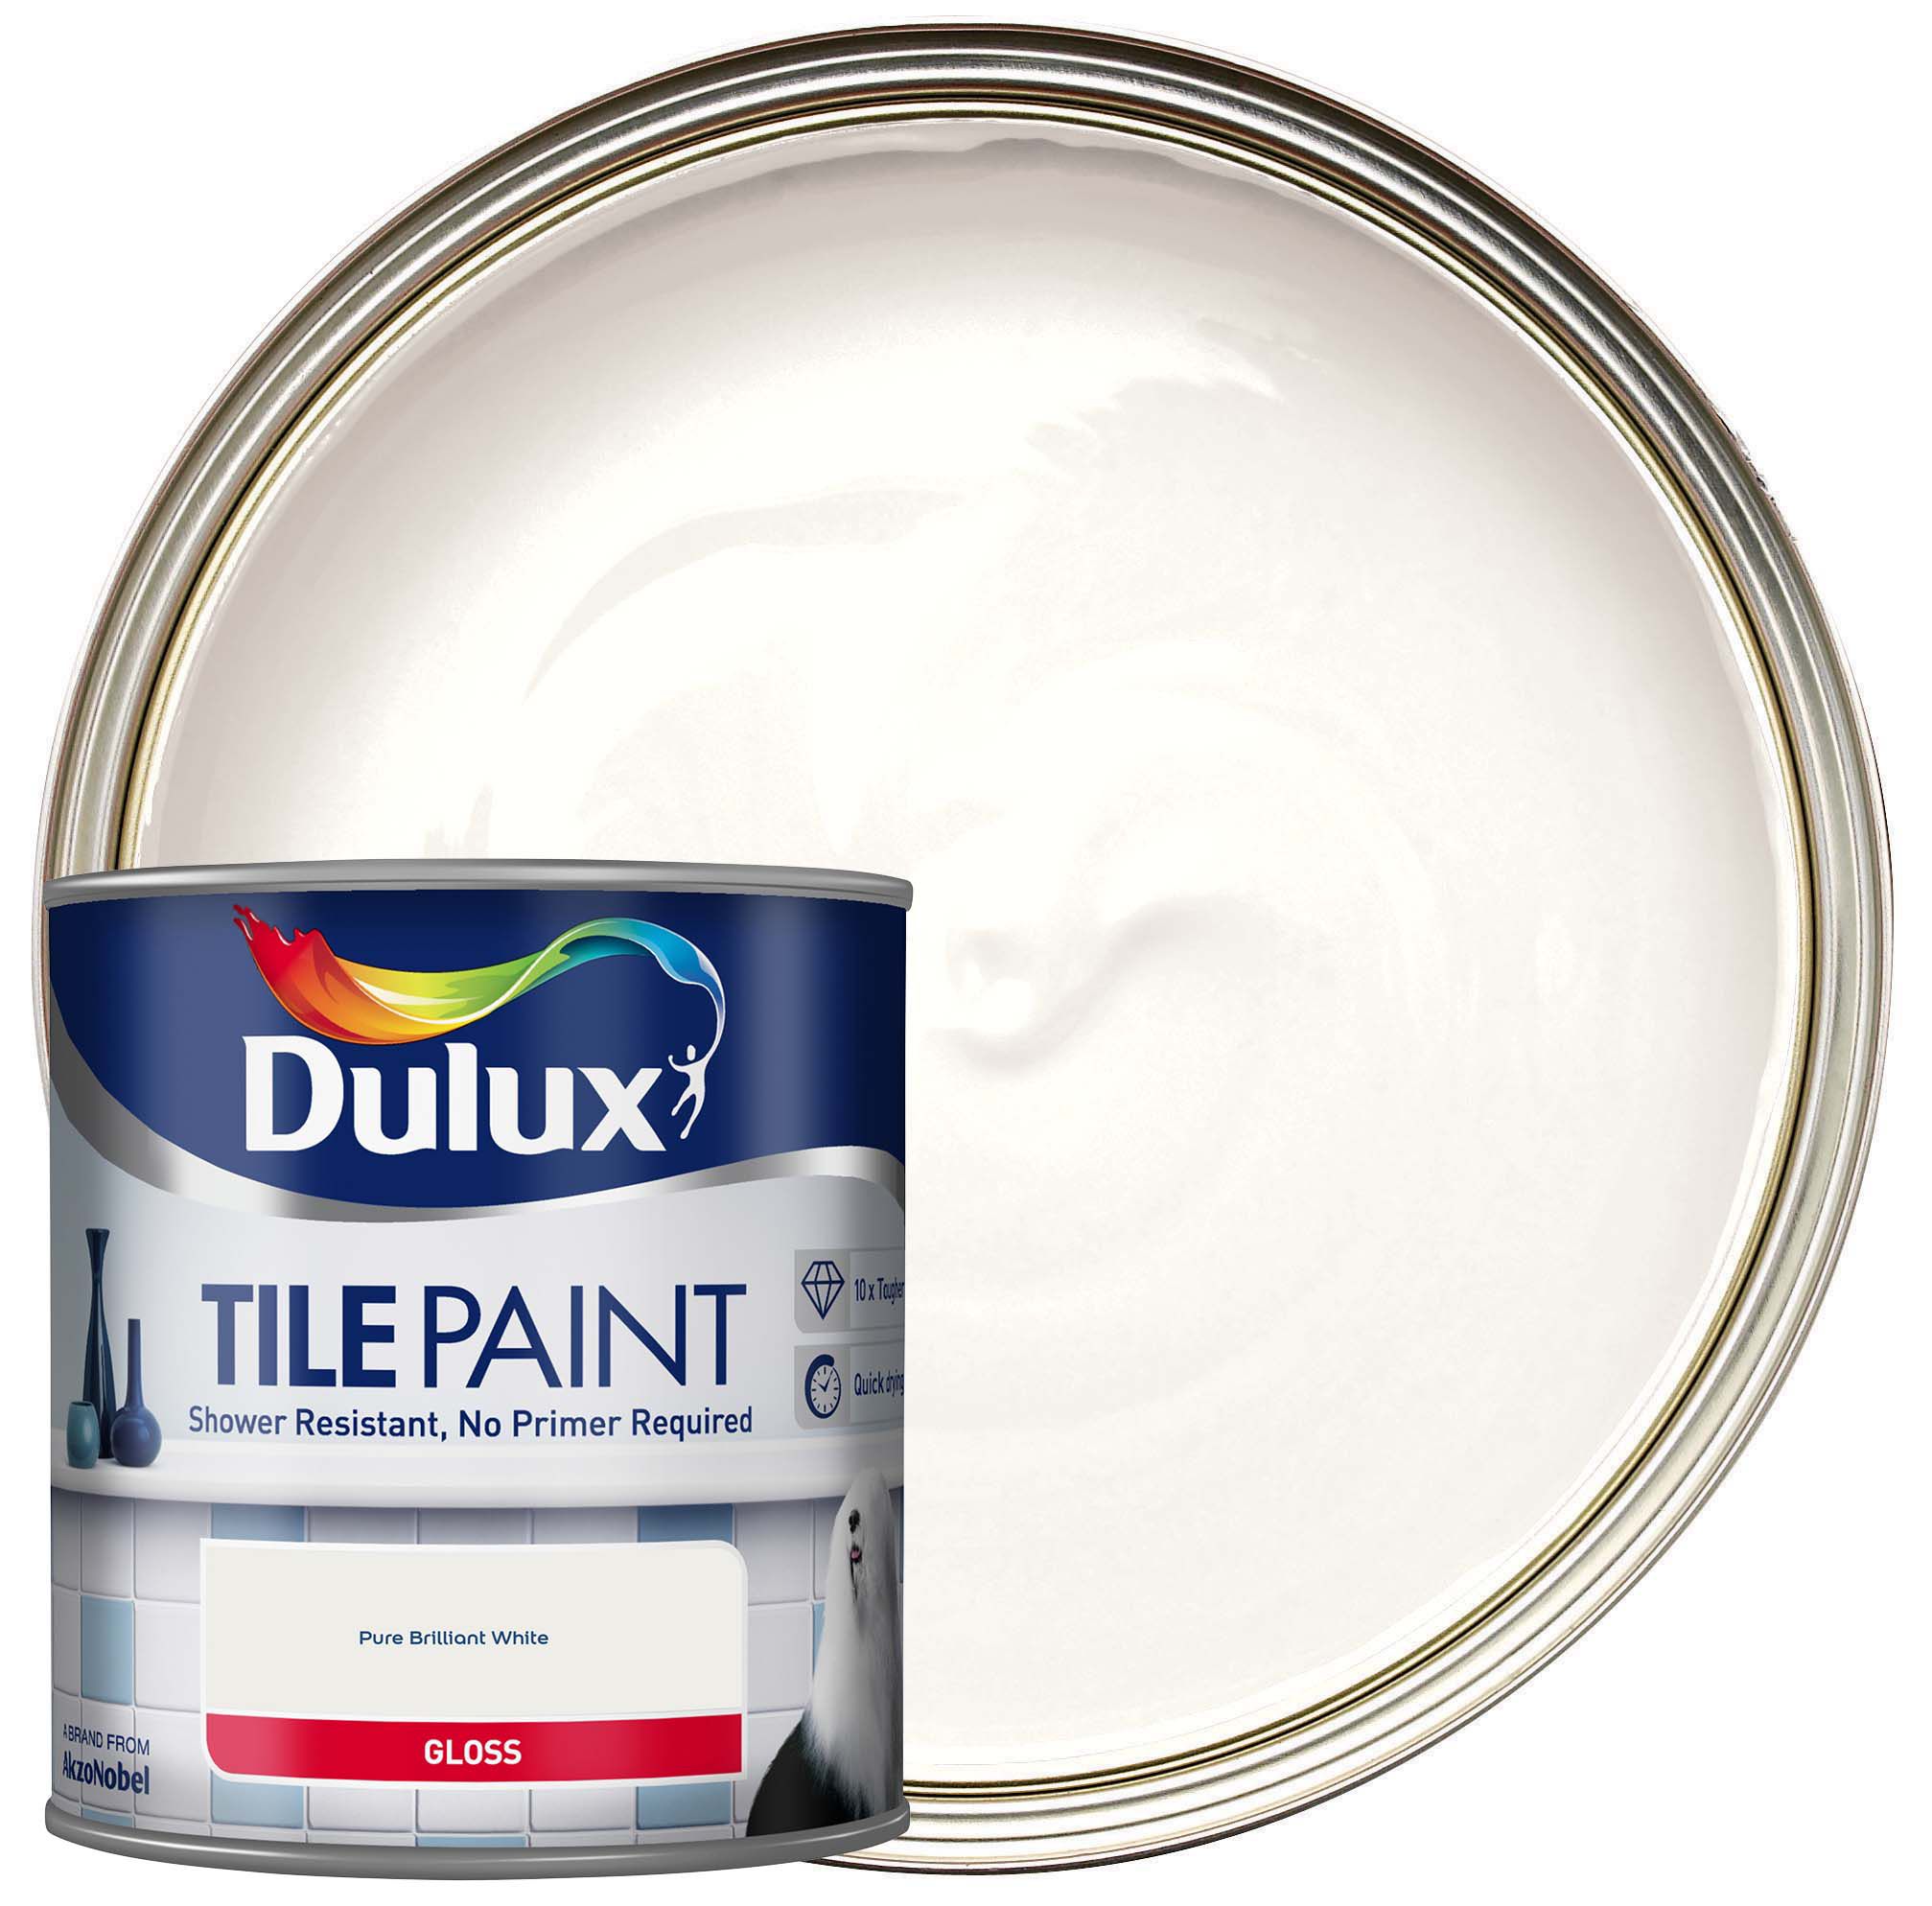 Image of Dulux Tile Paint - Pure Brilliant White - 600ml